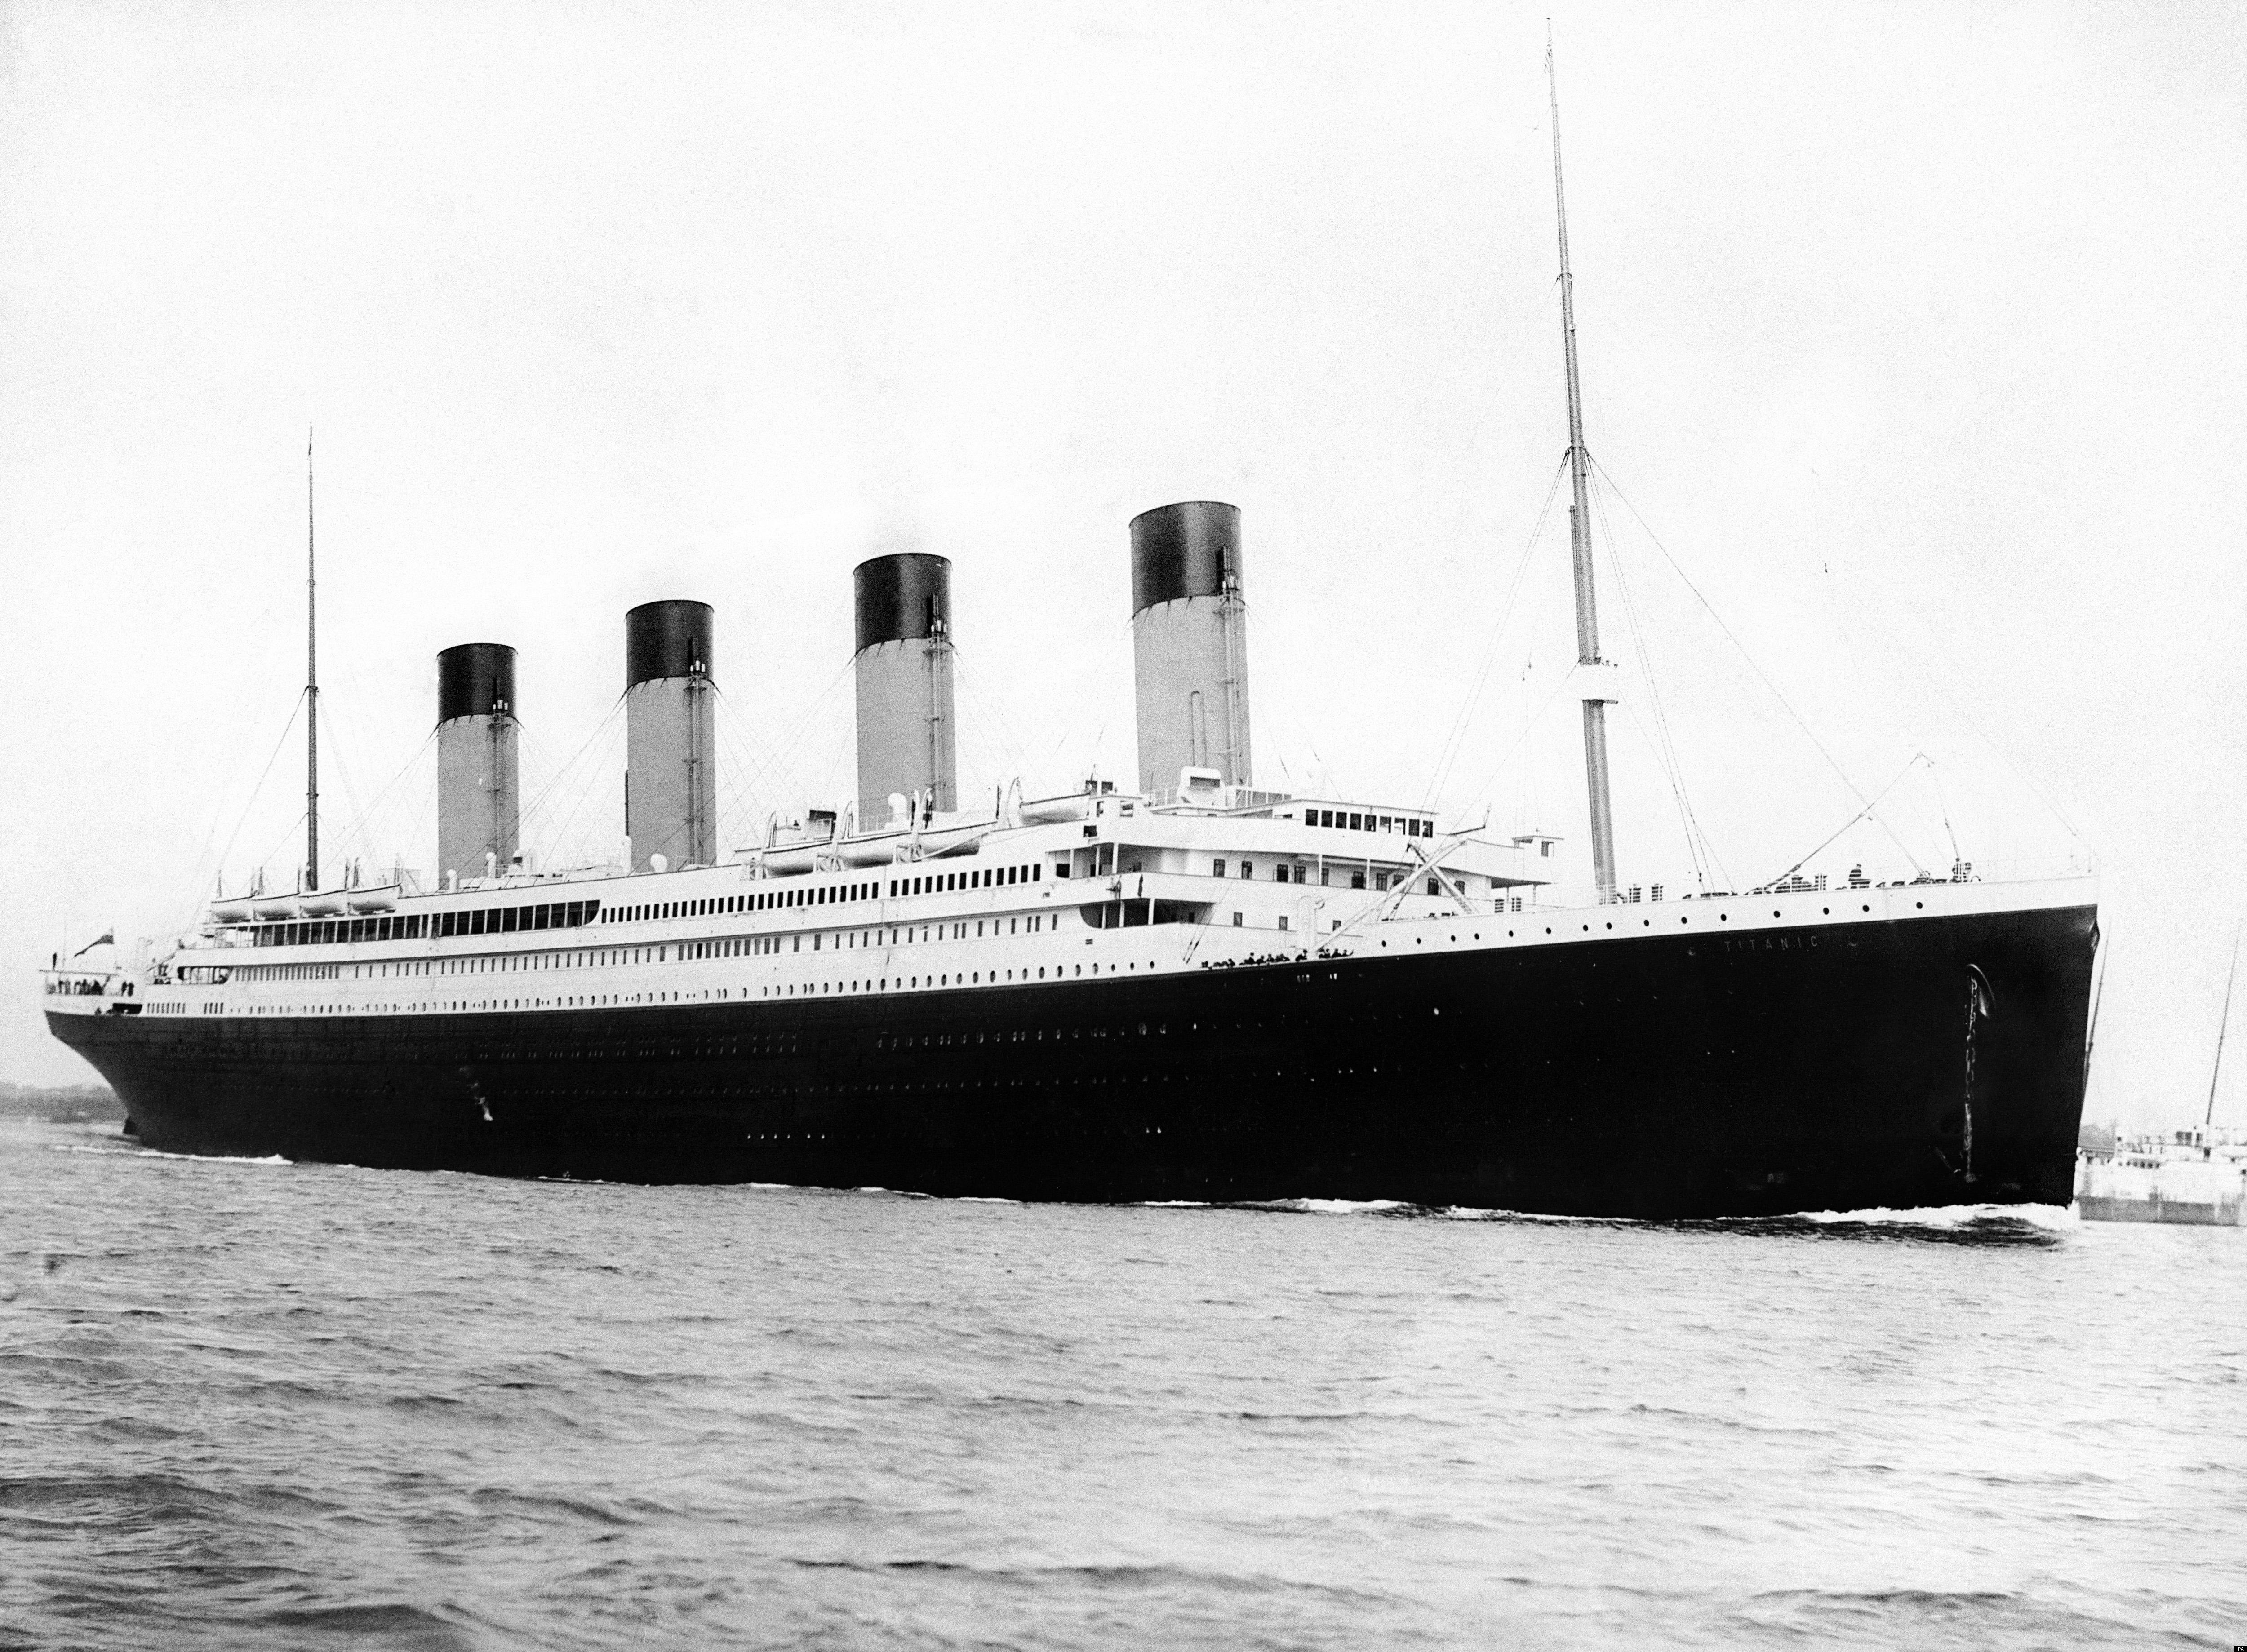 Titanic essay questions